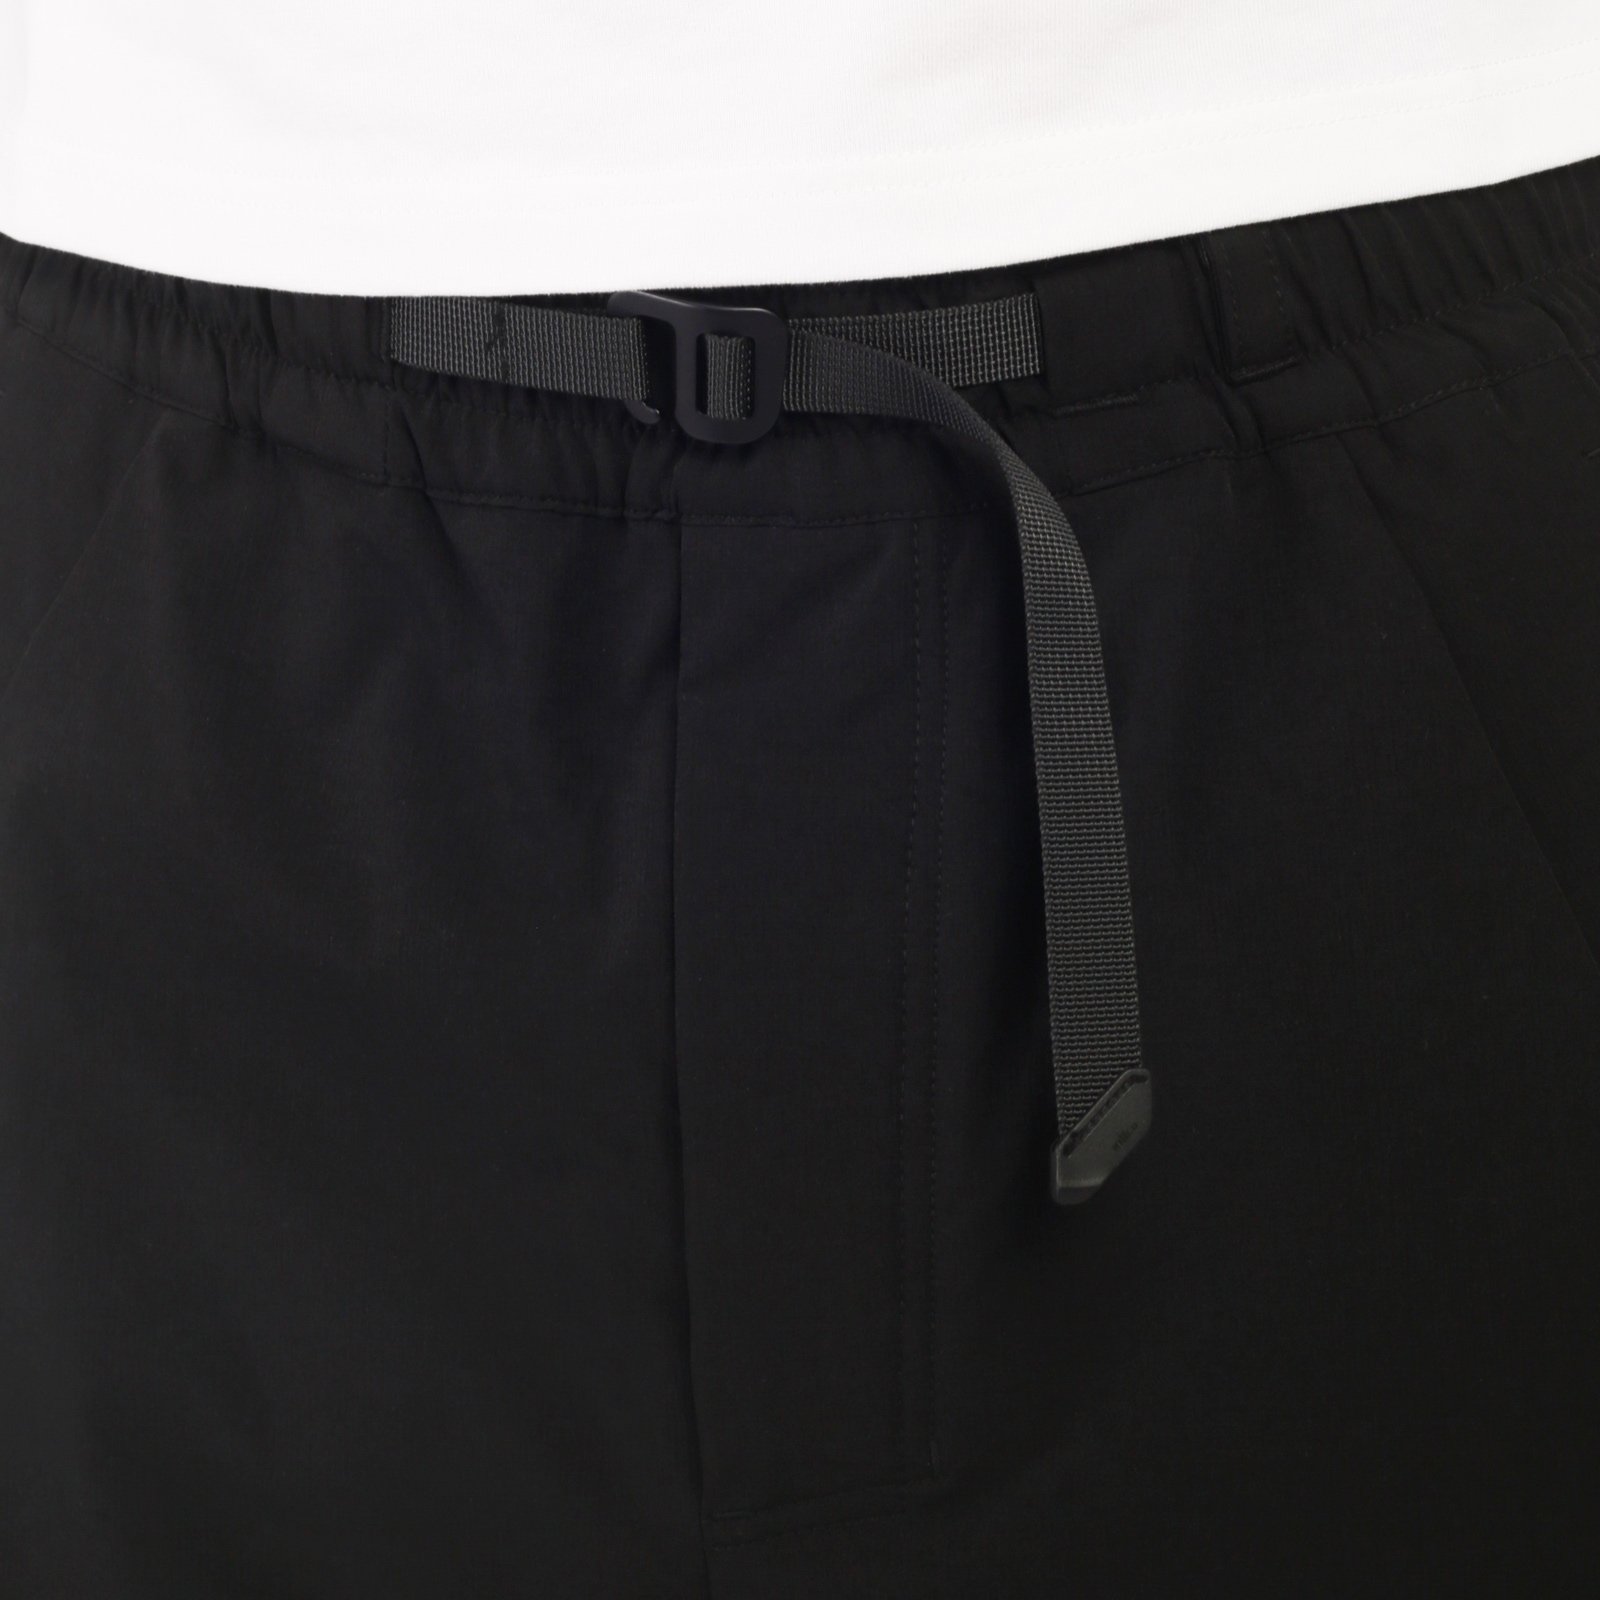 мужские шорты KRAKATAU Rm183-1-чёрный  (Rm183-1-чёрный)  - цена, описание, фото 5